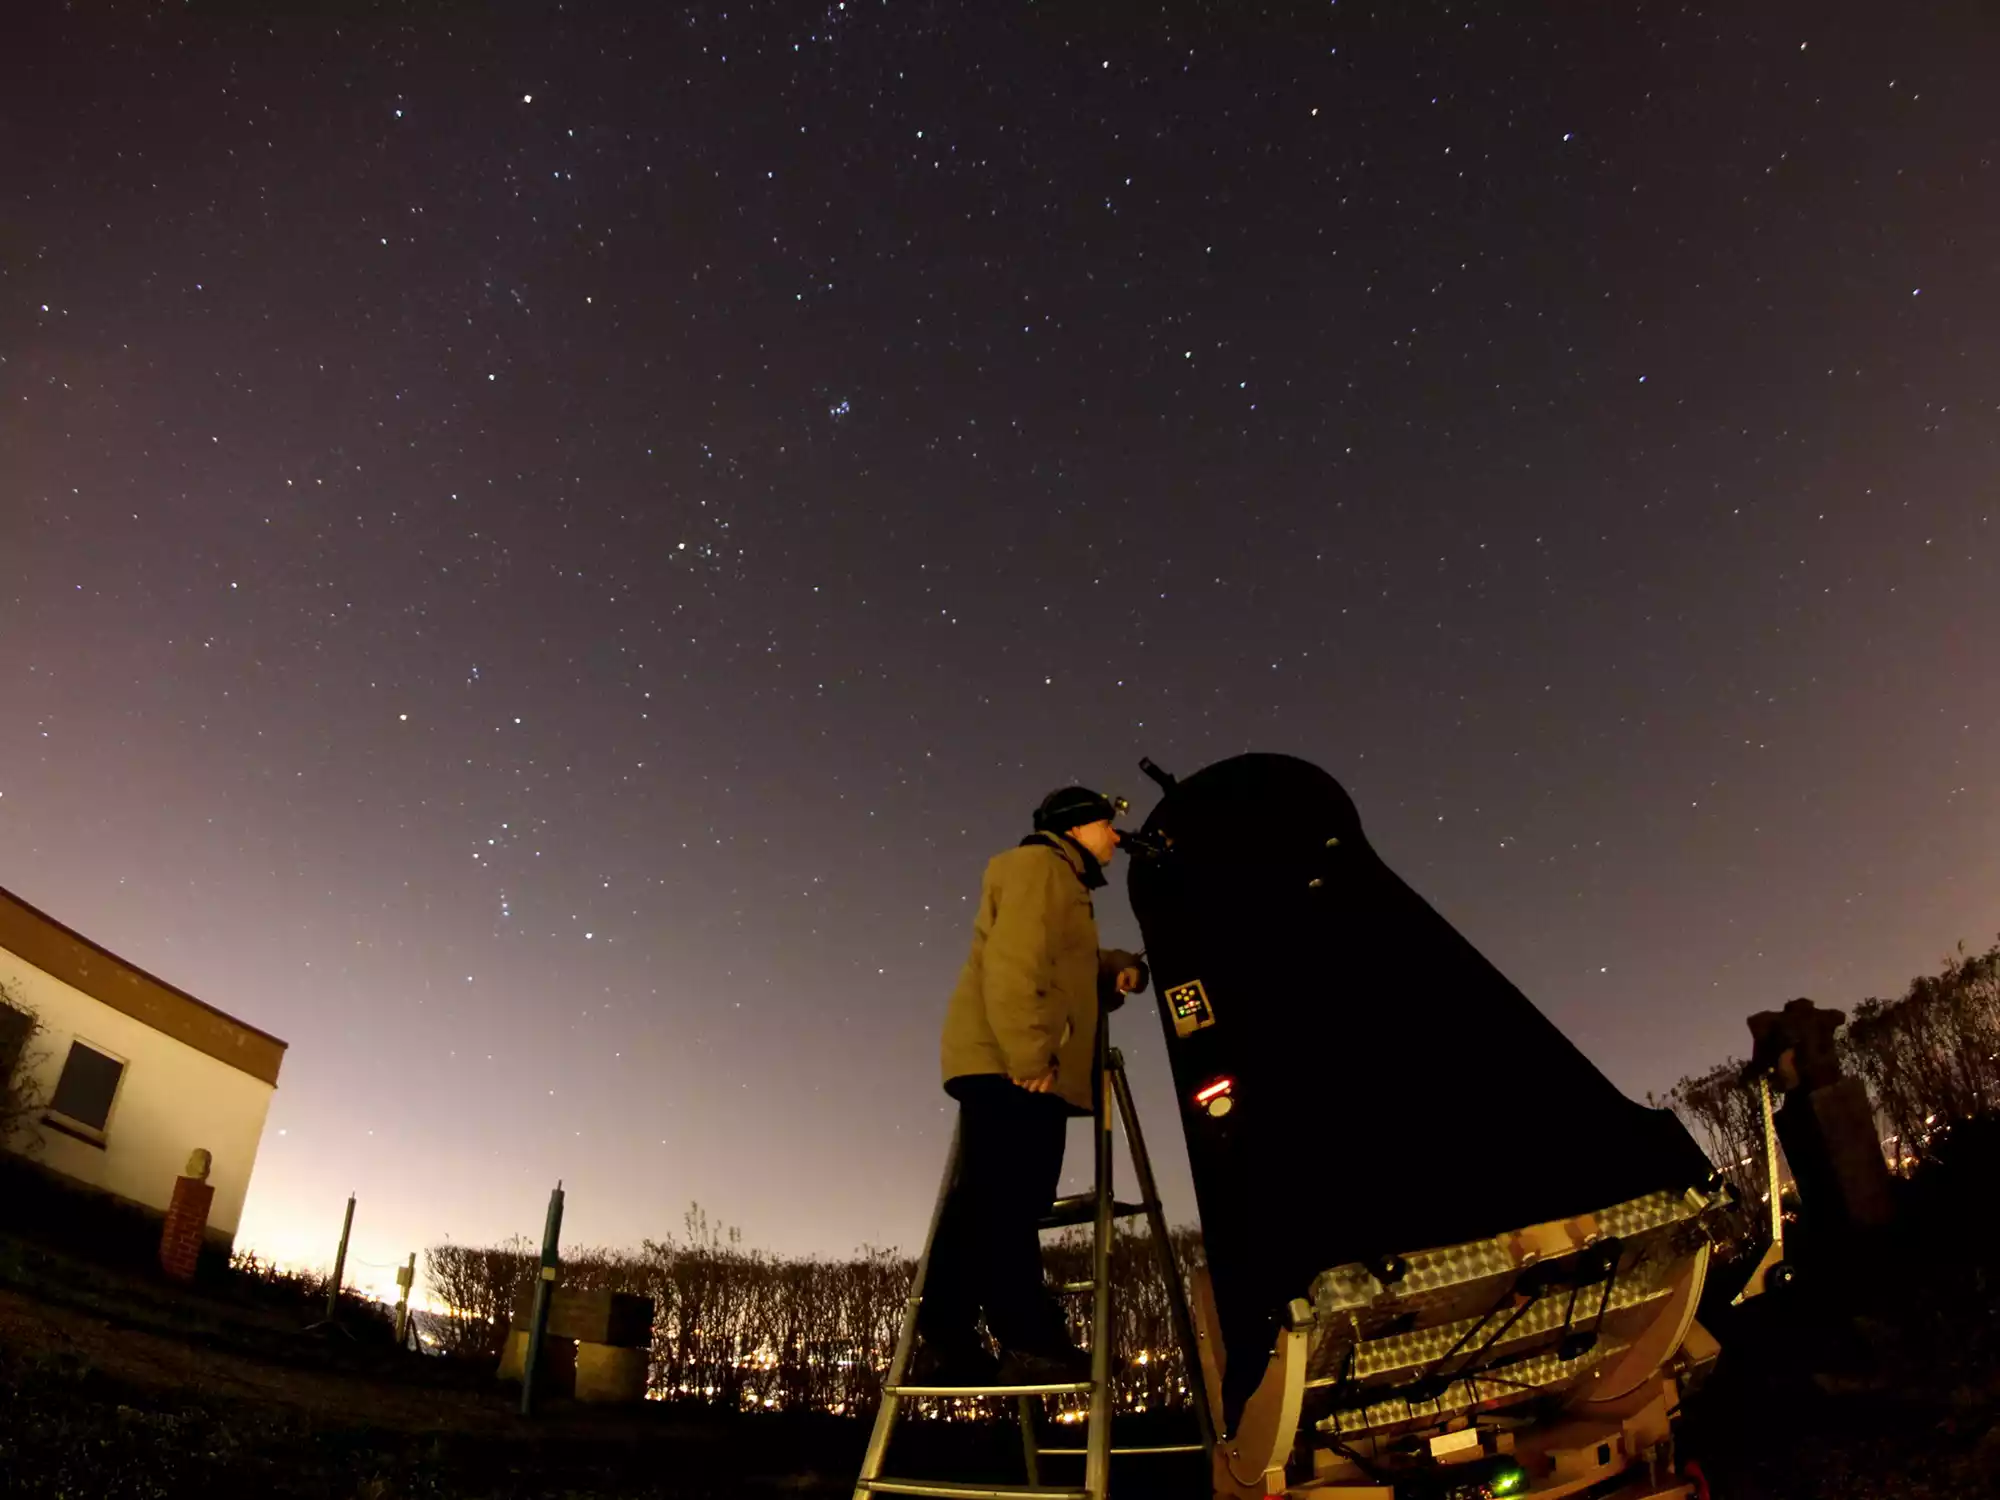 Mitglied des Astroclub Radebeul e. V. bei der Sternbeobachtung am 24 Zoll Spiegelteleskop der Sternwarte Radebeul